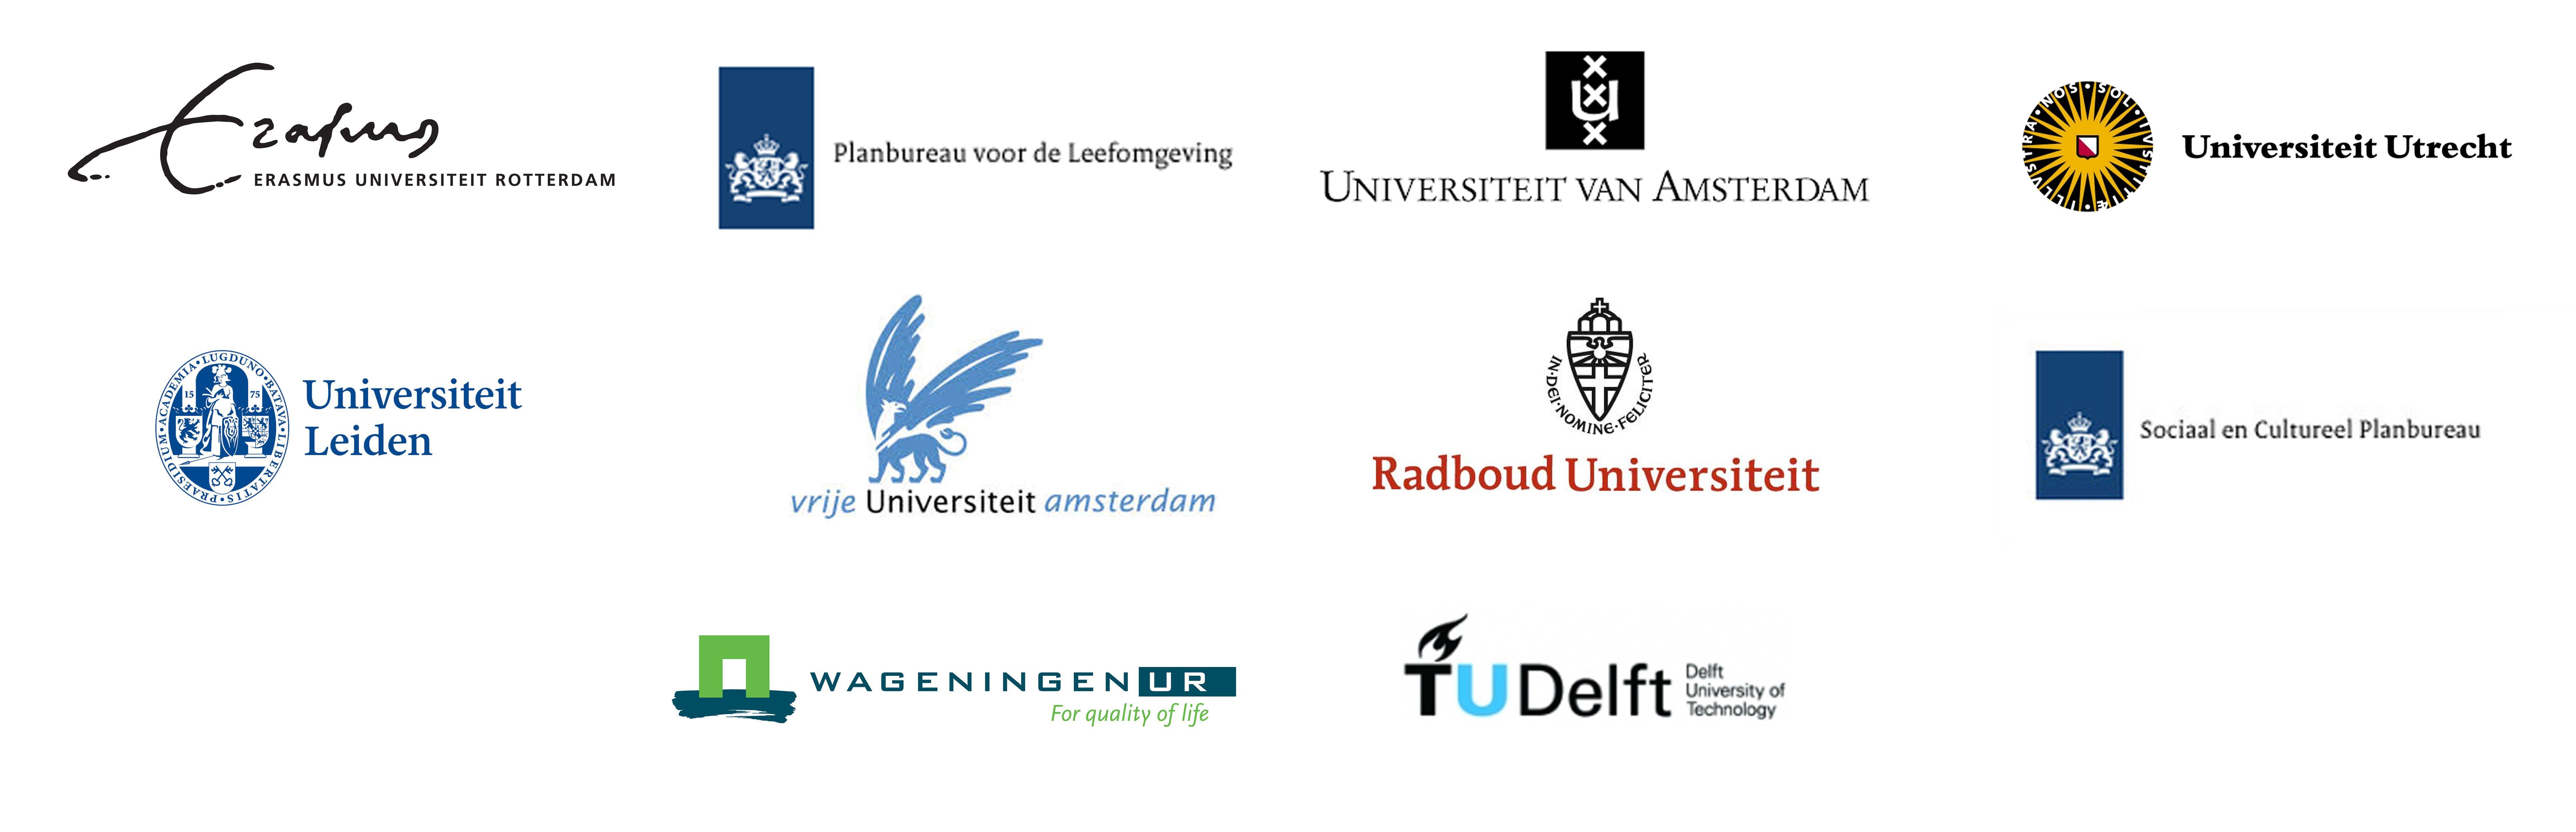 M-science onderzoek voor universiteiten en kennisinstituten